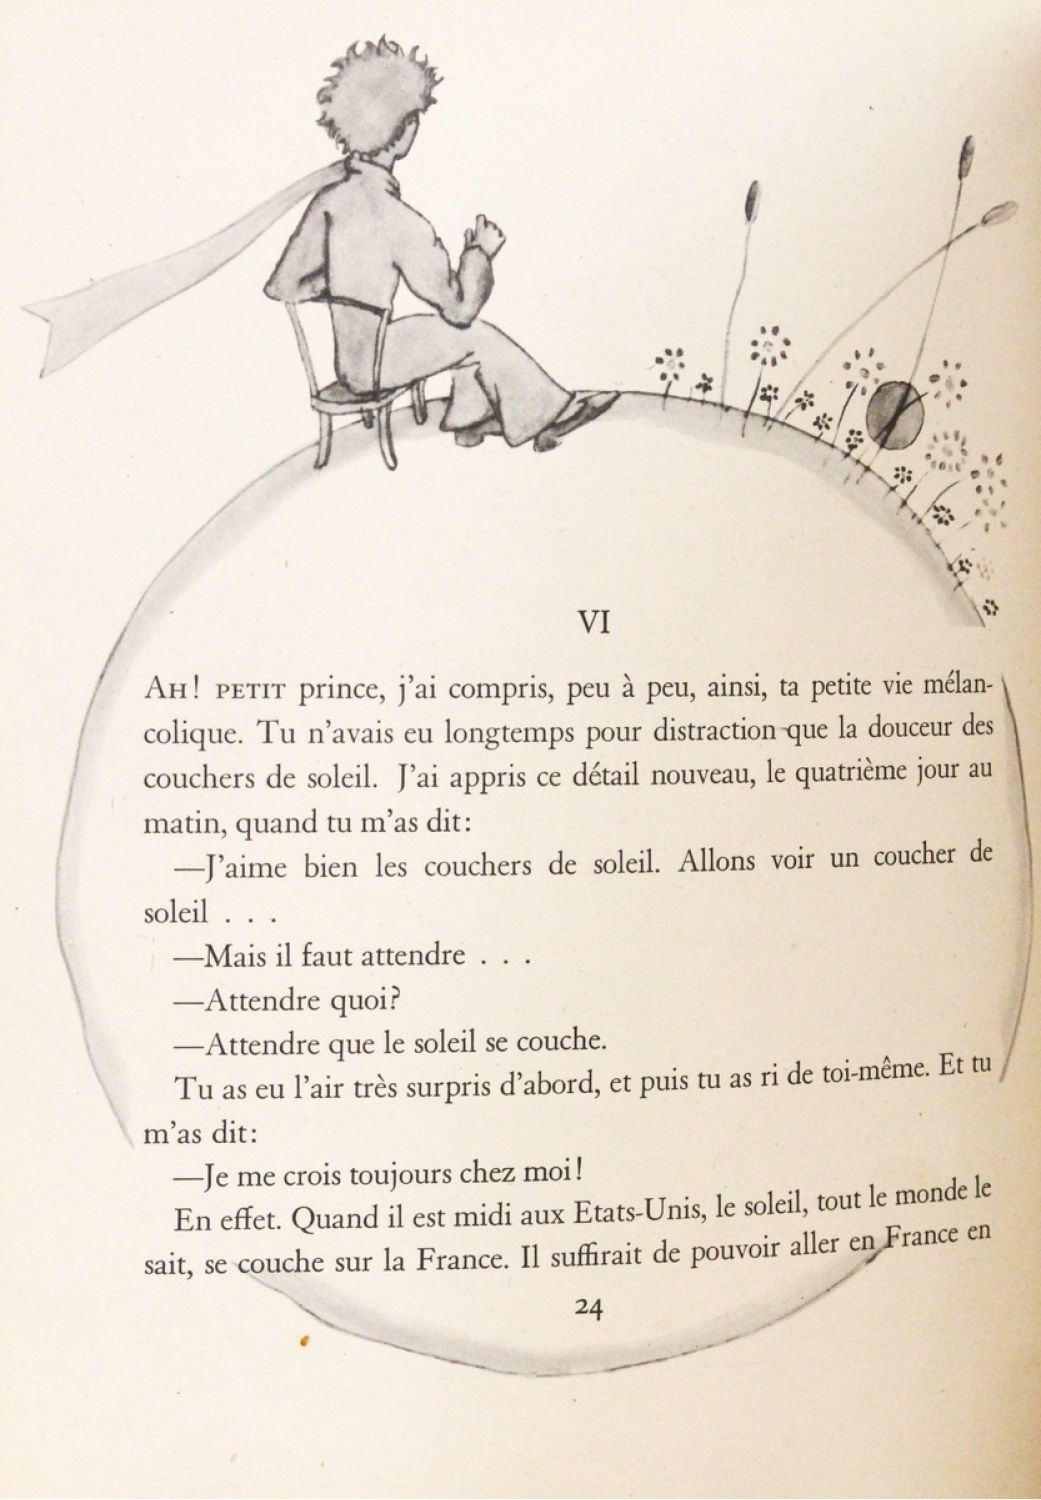 Le Petit Prince » de Saint-Exupéry, éternellement grand